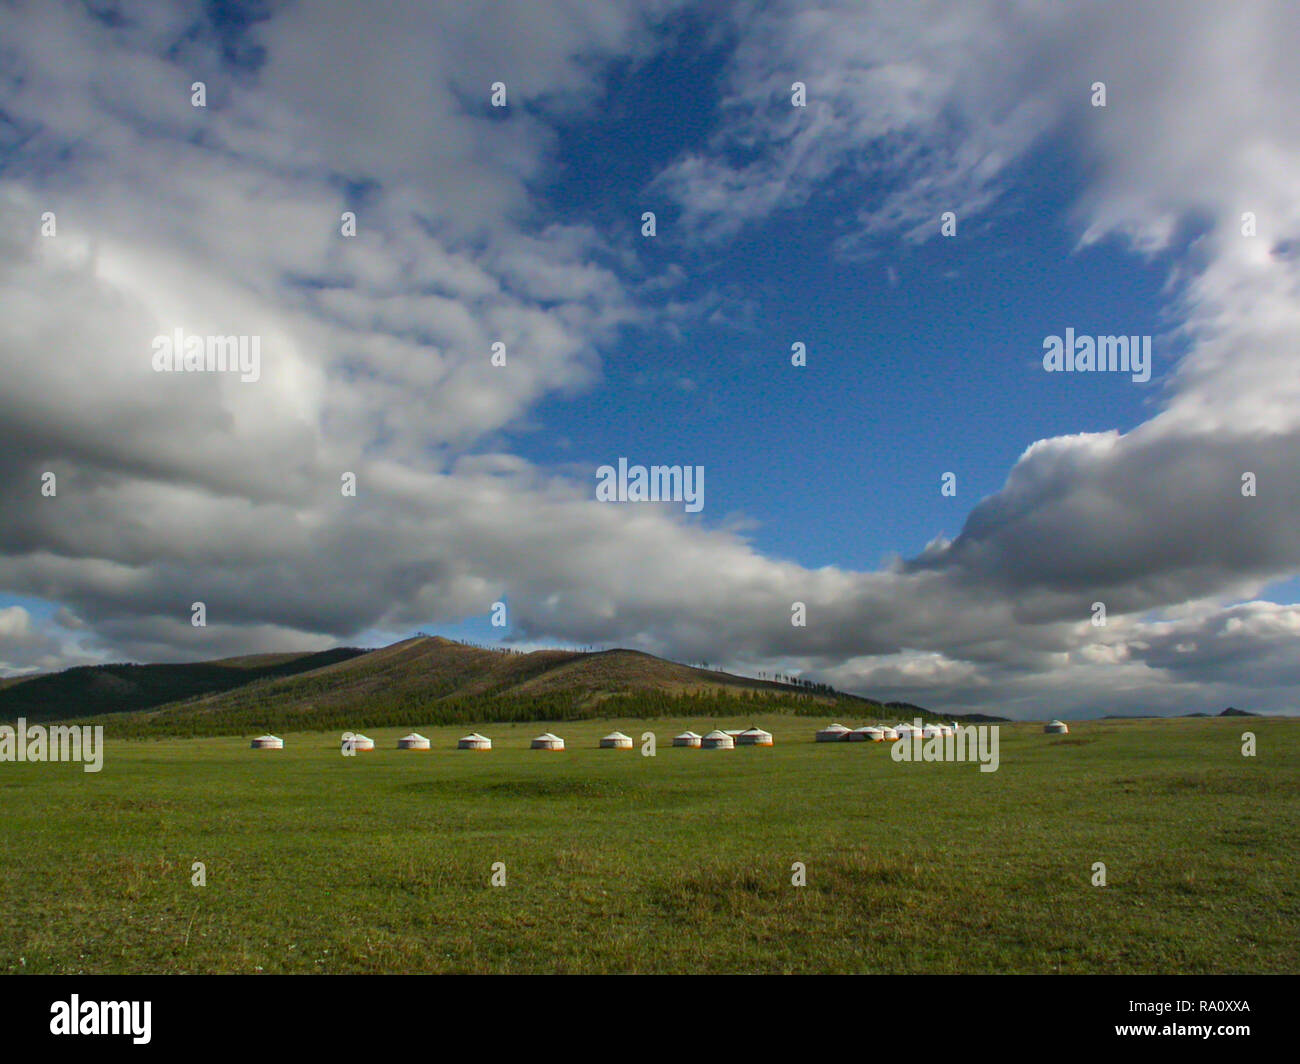 Camp de Yourte Mongole sous ciel bleu avec des nuages, panorama de la vallée de la rivière Tuul, Khan Khentii, Mongolie Banque D'Images